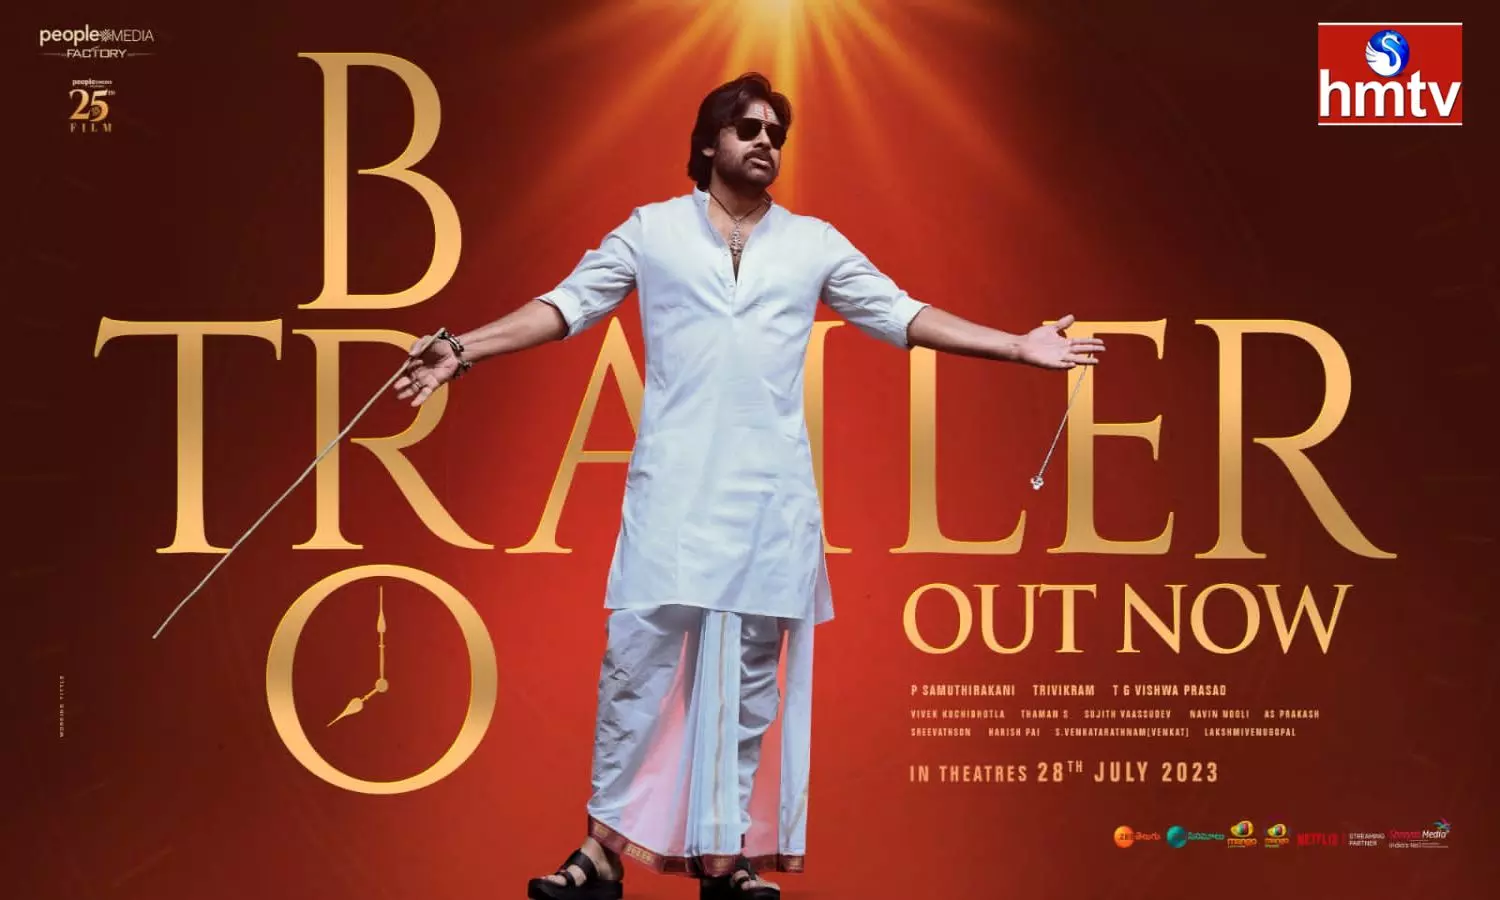 BRO Trailer Out Now Pawan Kalyan As God